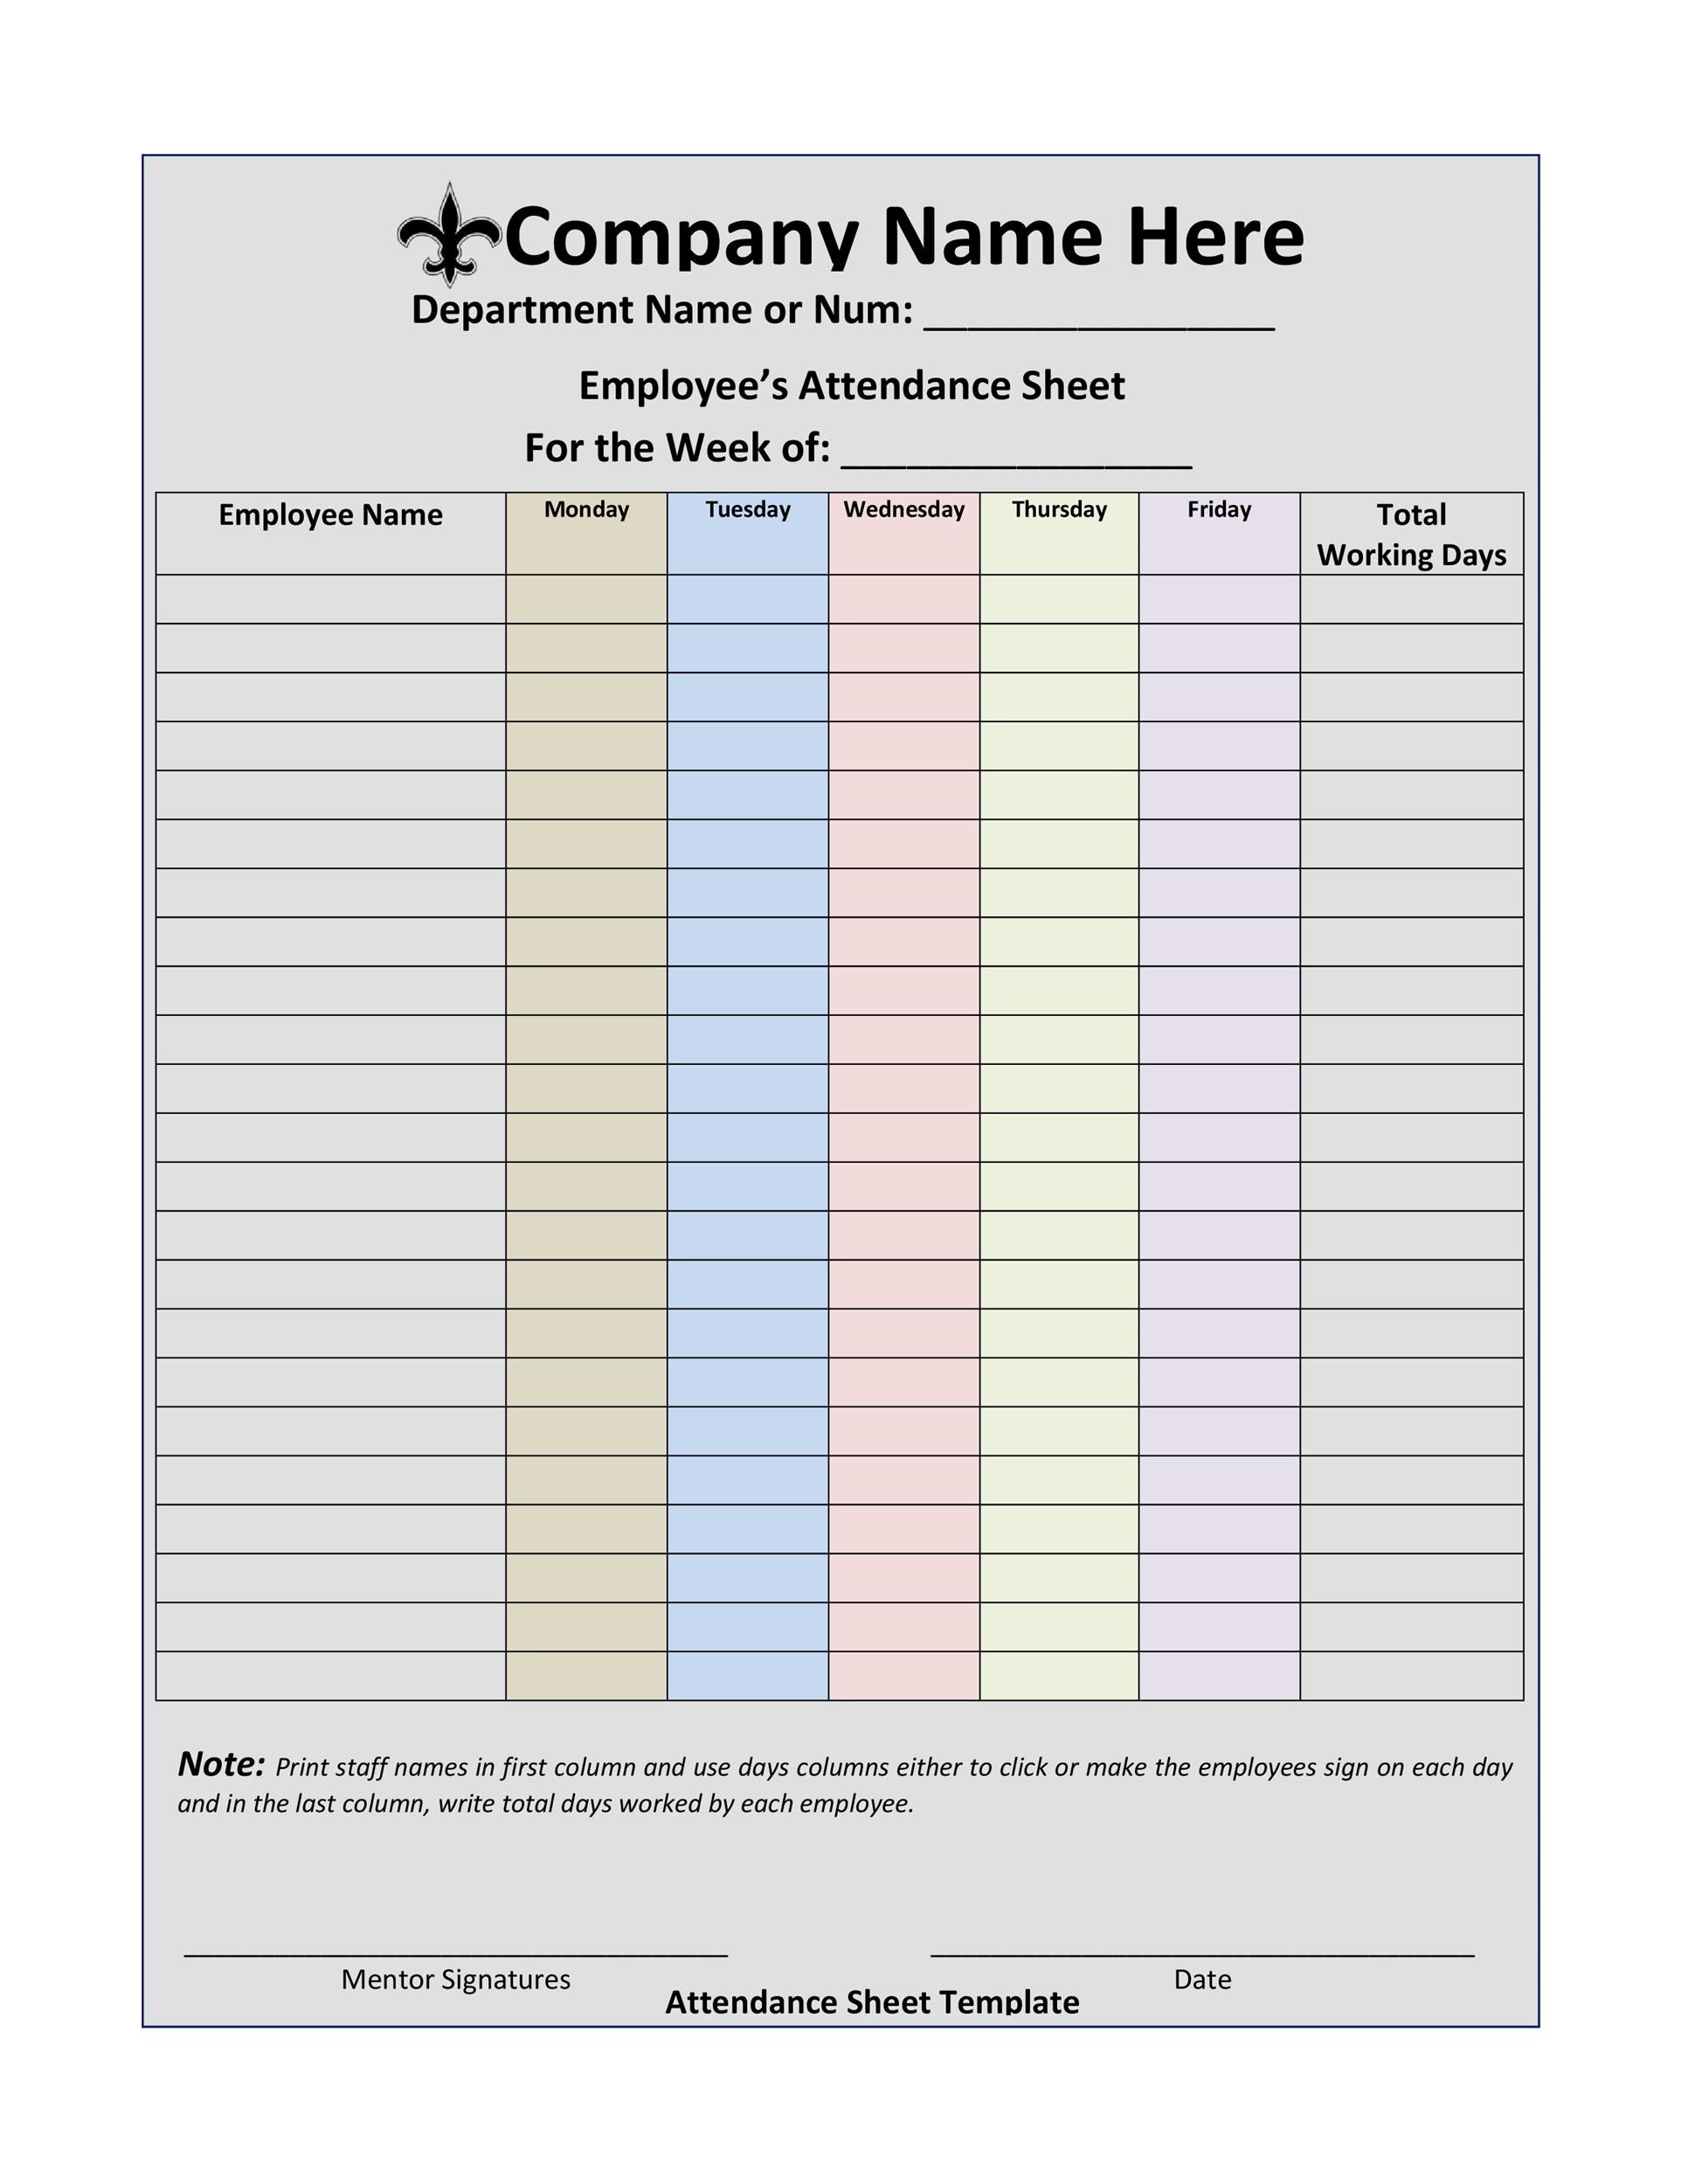 weekly-attendance-sheet-template-teachers-resources